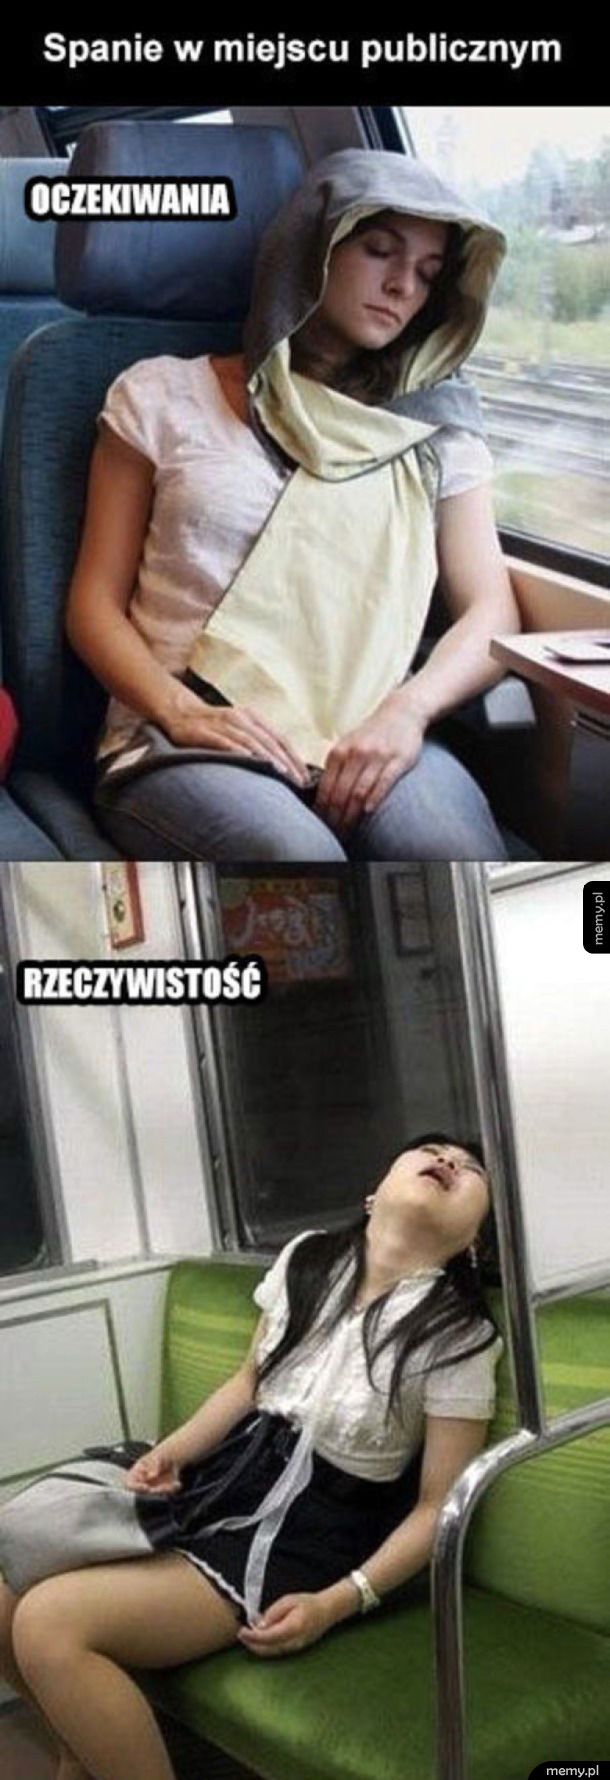 Spanie w publicznych miejscach